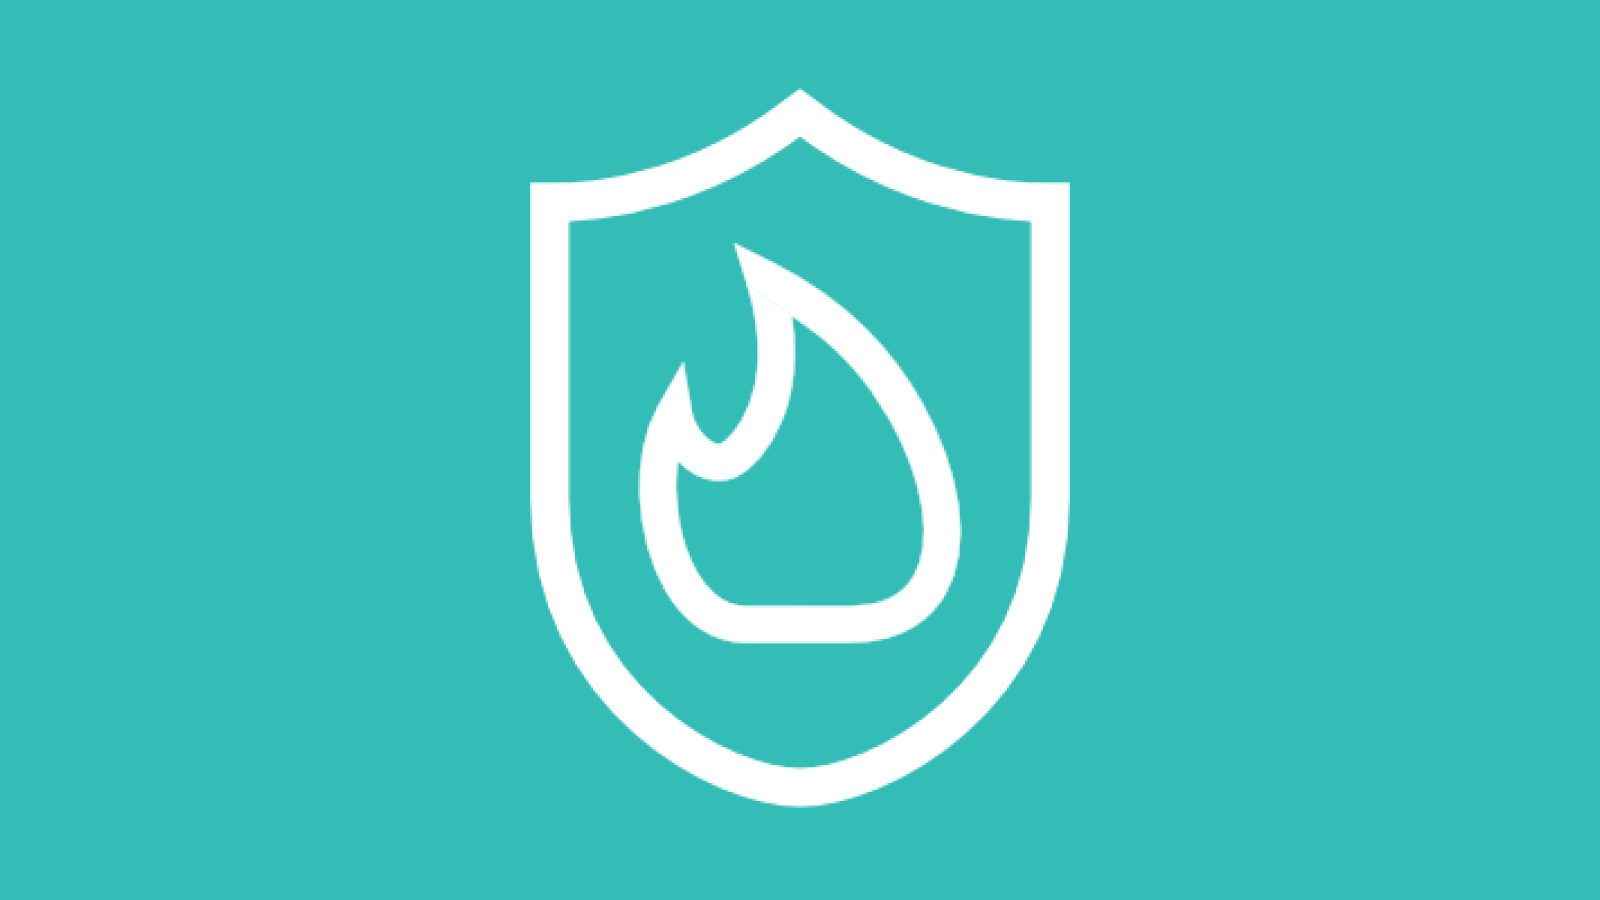 Logo Arbeitsschutz Digital - Wei?e Flamme und Wappen auf trkisem Hintergrund